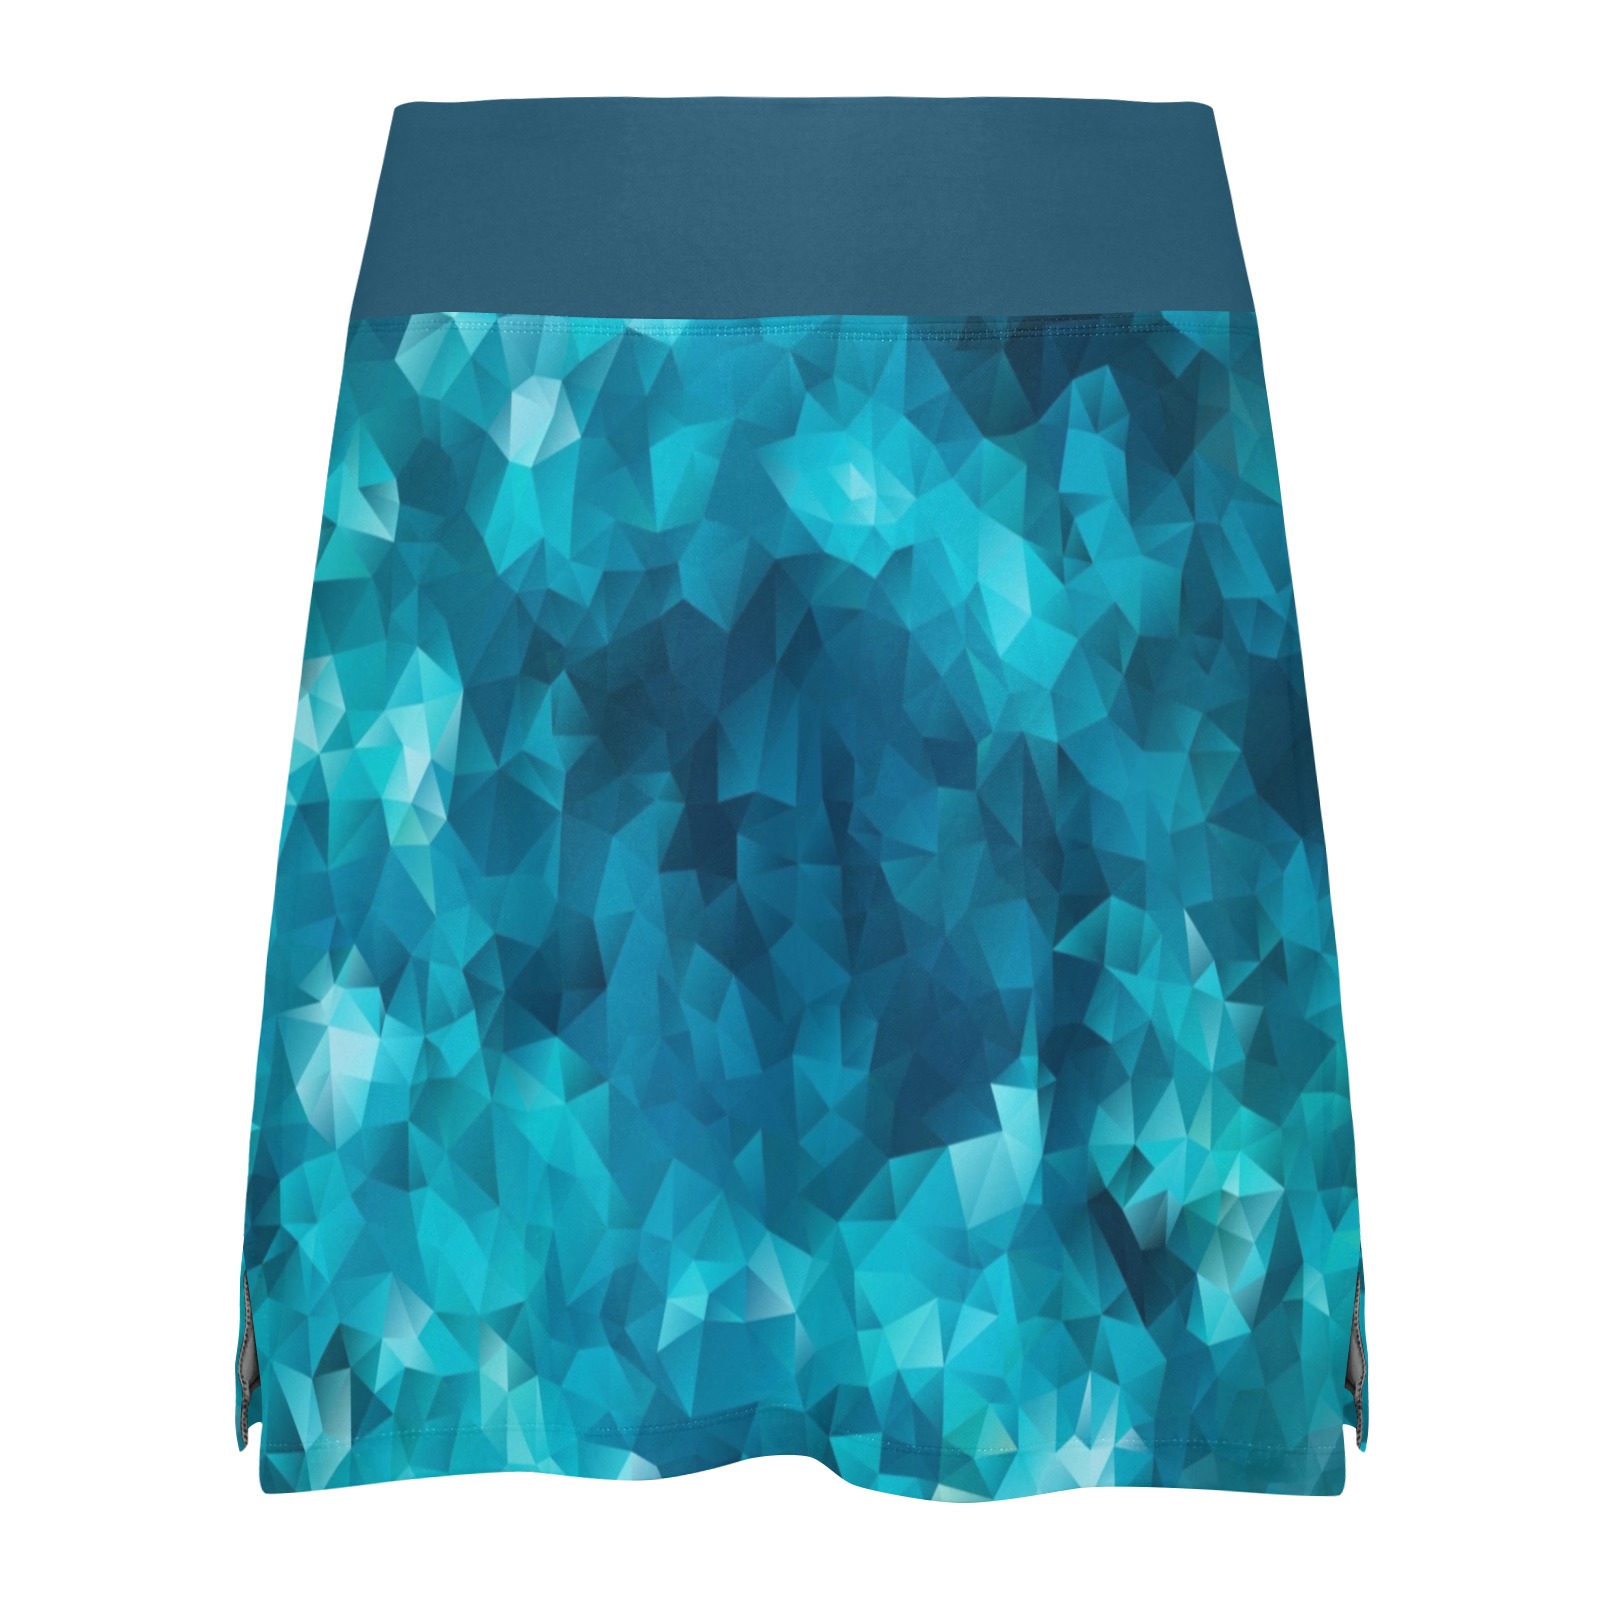 Blues Abstract Golf Skirt Women's Athletic Skirt (Model D64)